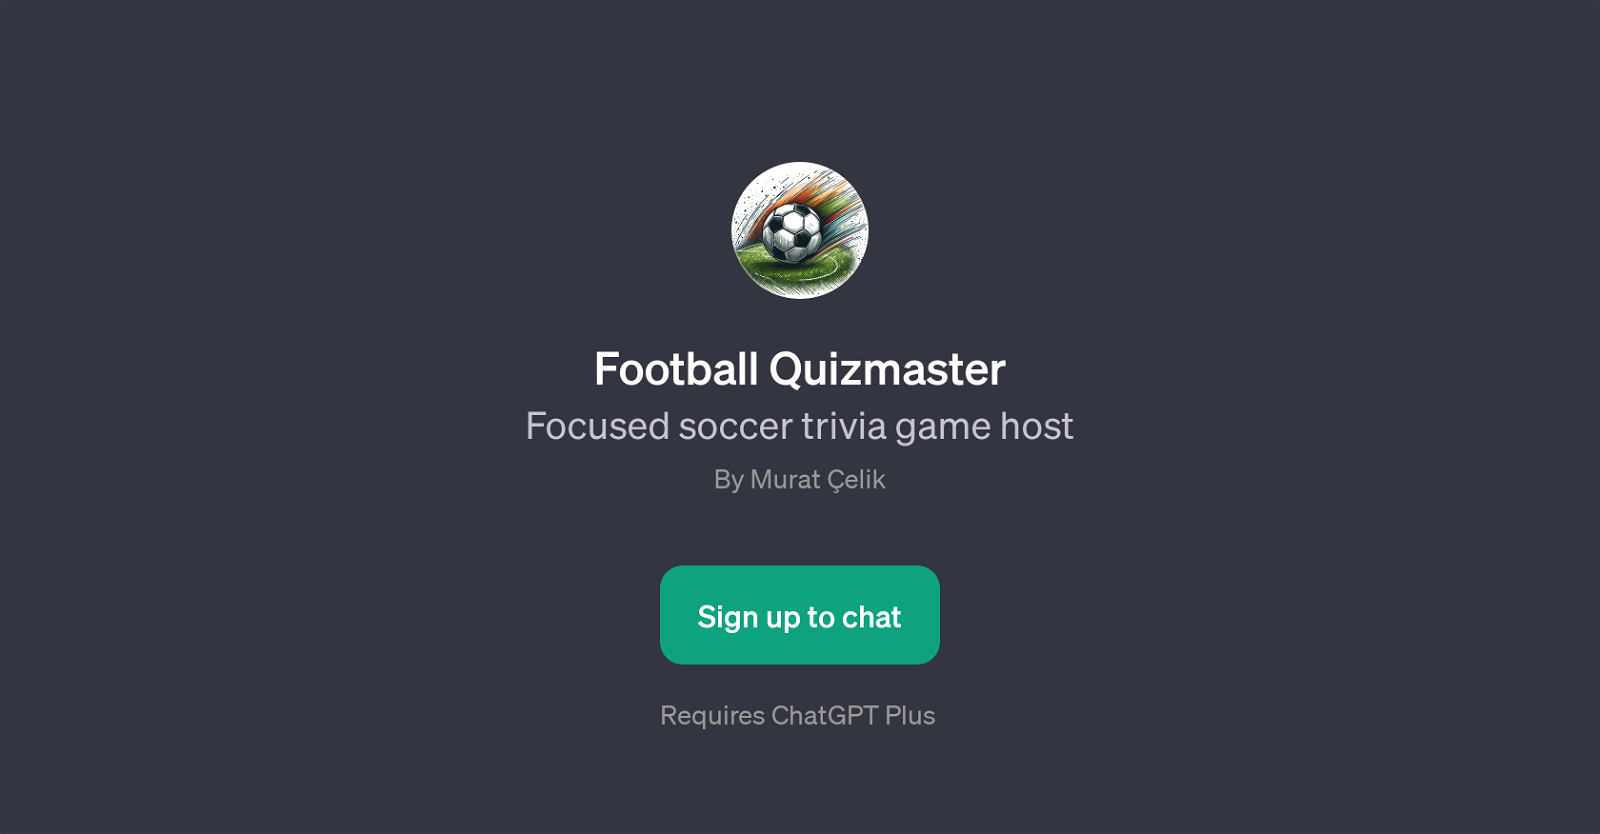 Football Quizmaster website